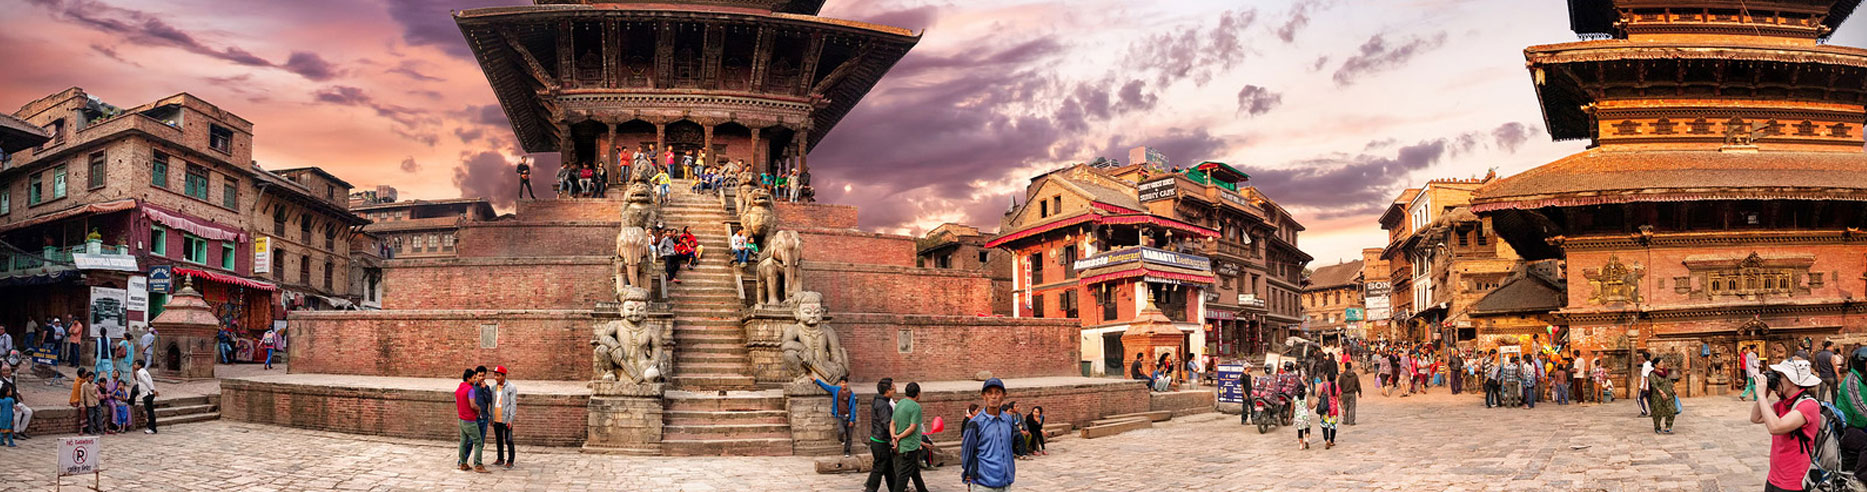 Pokhara Kathmandu Janakpur Kushinagar